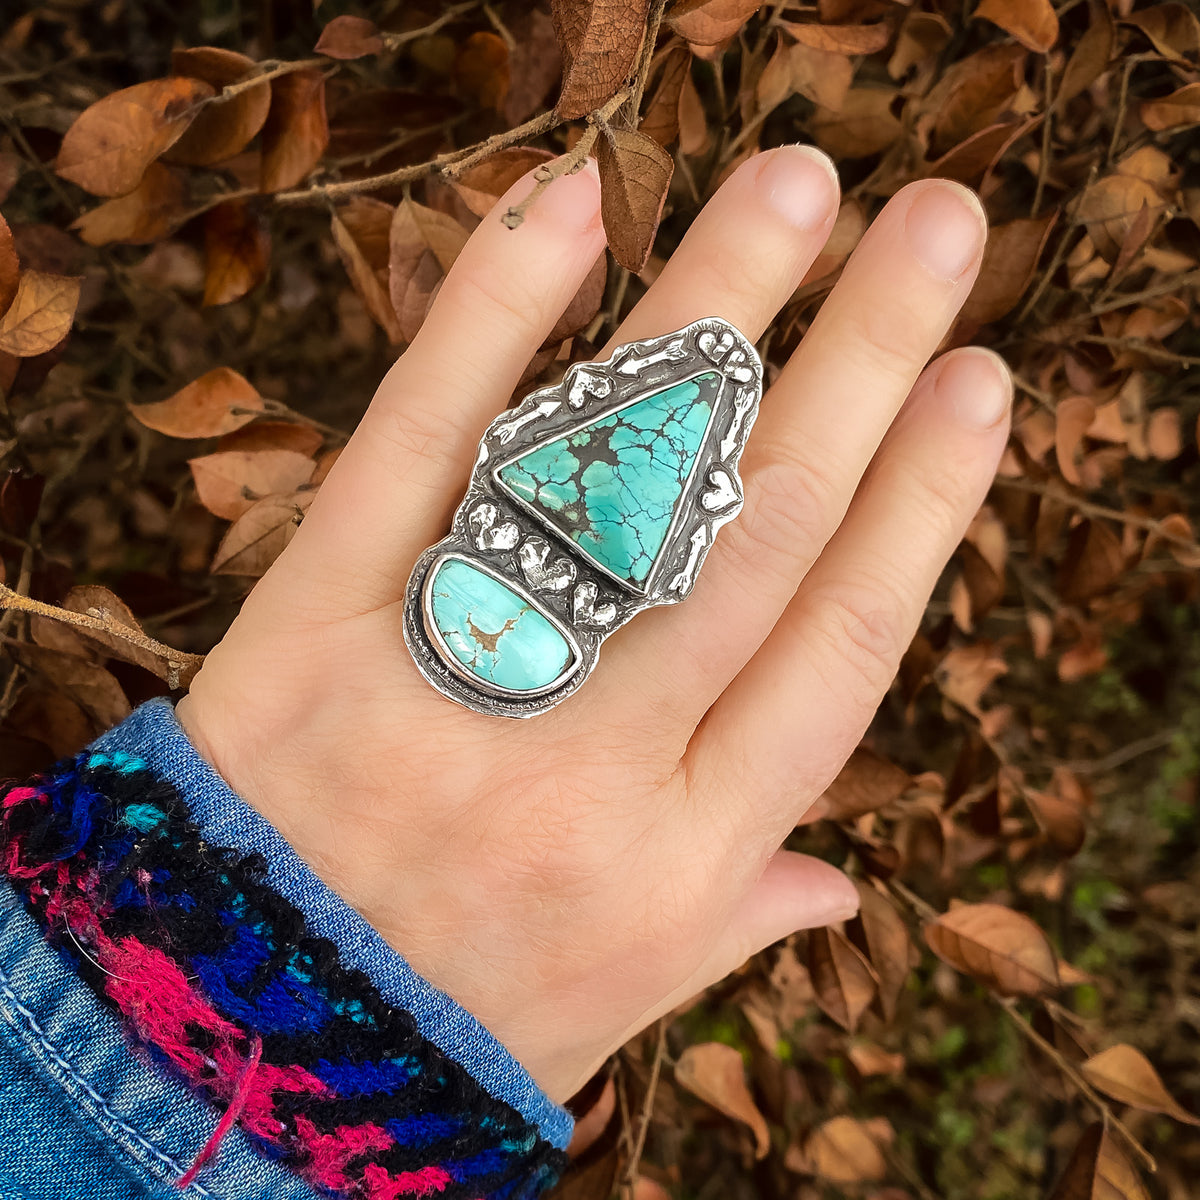 Trilogy Spirit Turquoise Ring - Size 6.75